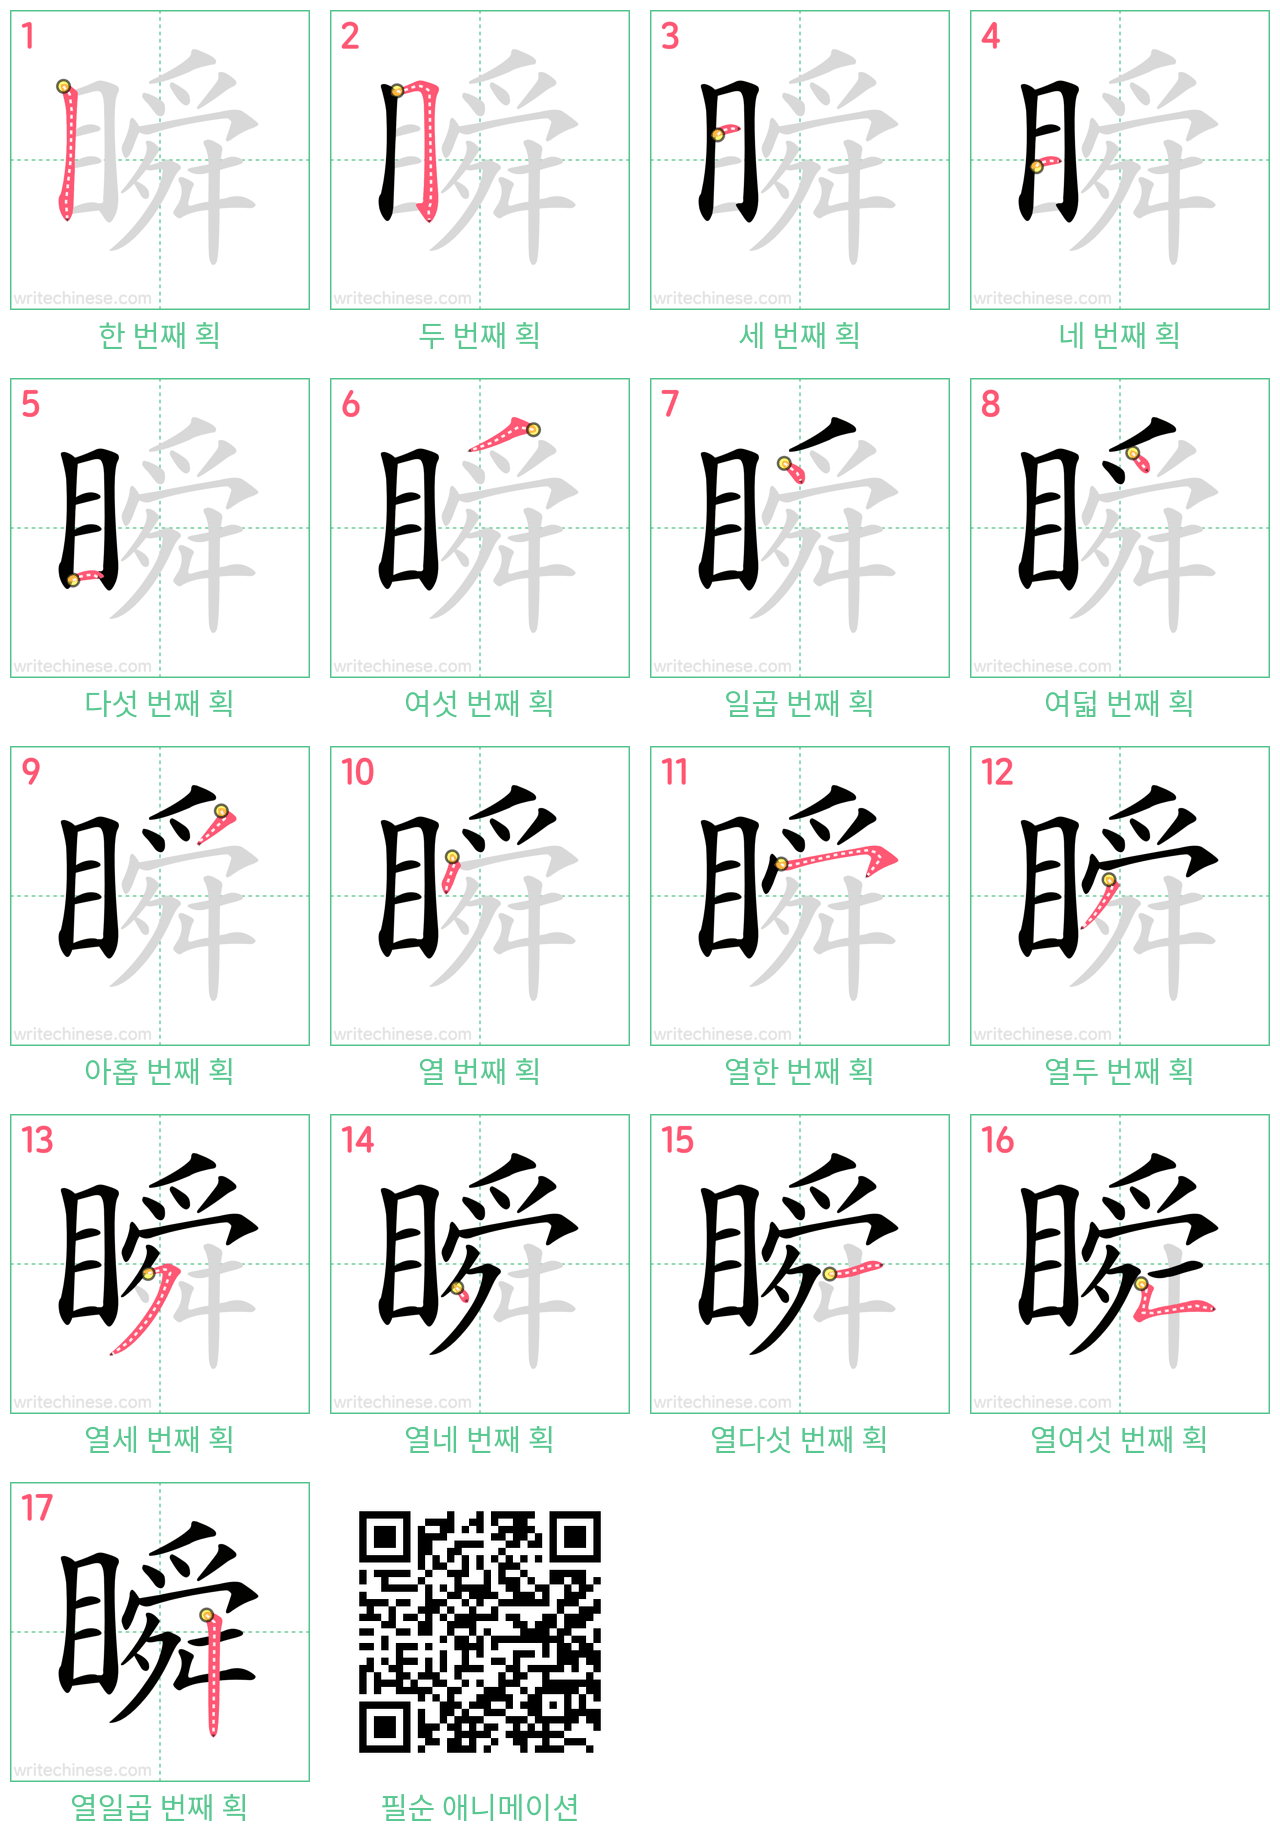 瞬 step-by-step stroke order diagrams